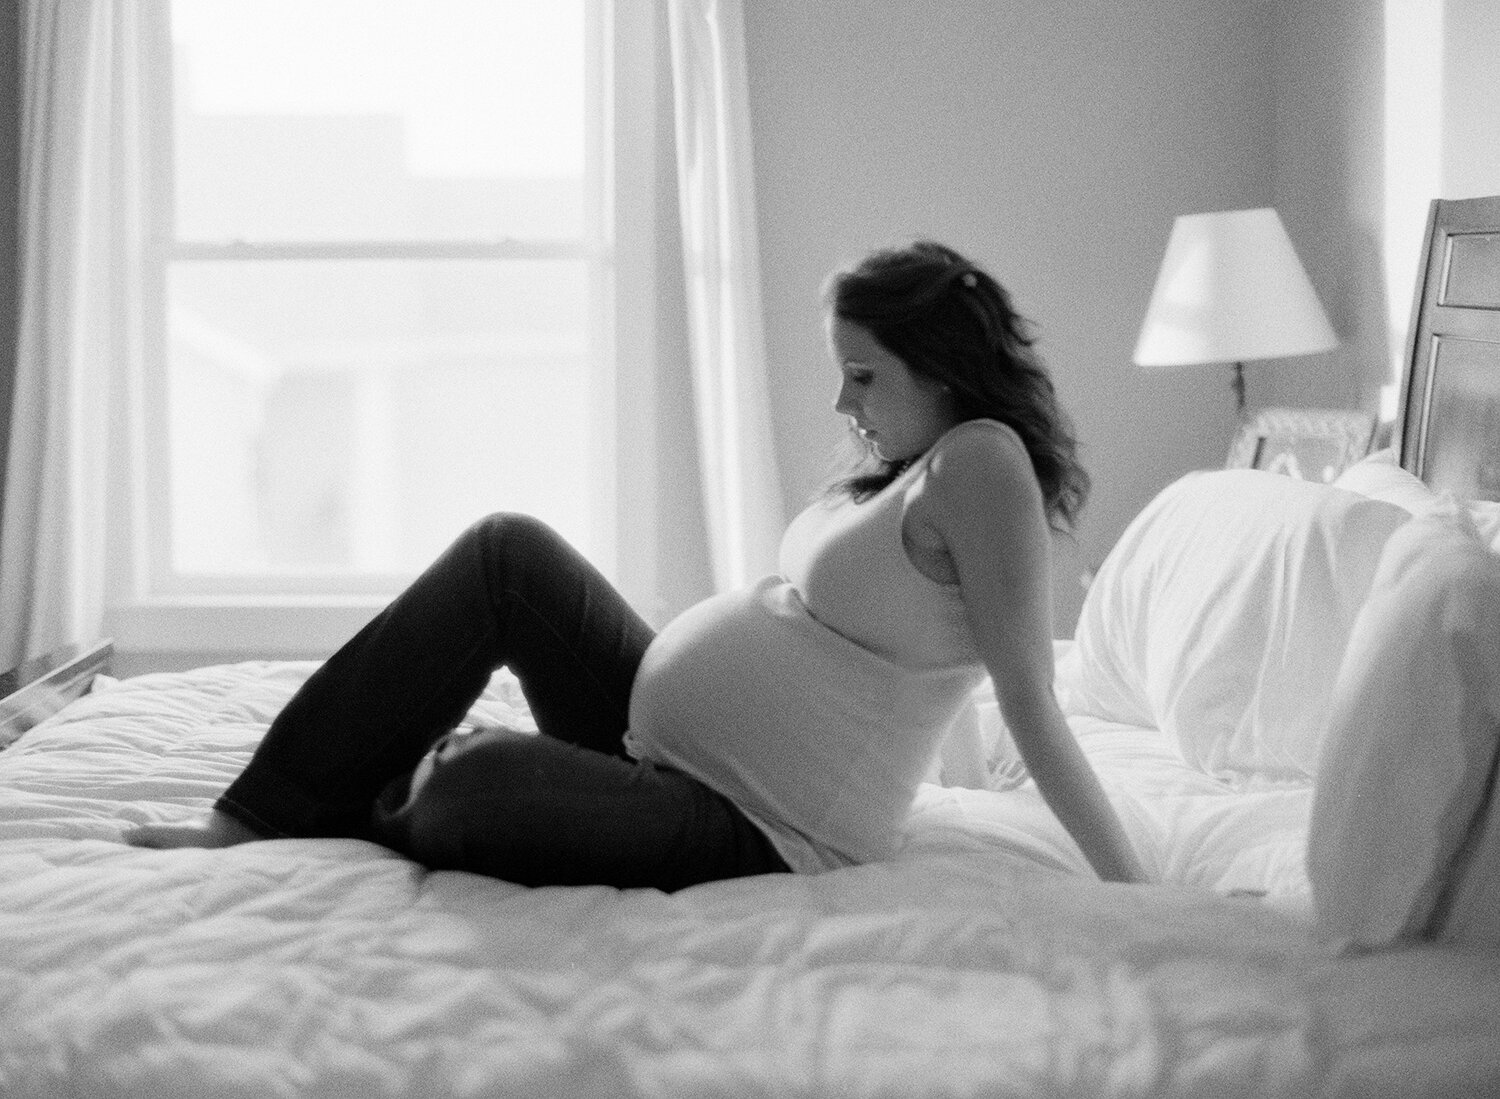 dena robles pregnancy photos on film.jpg